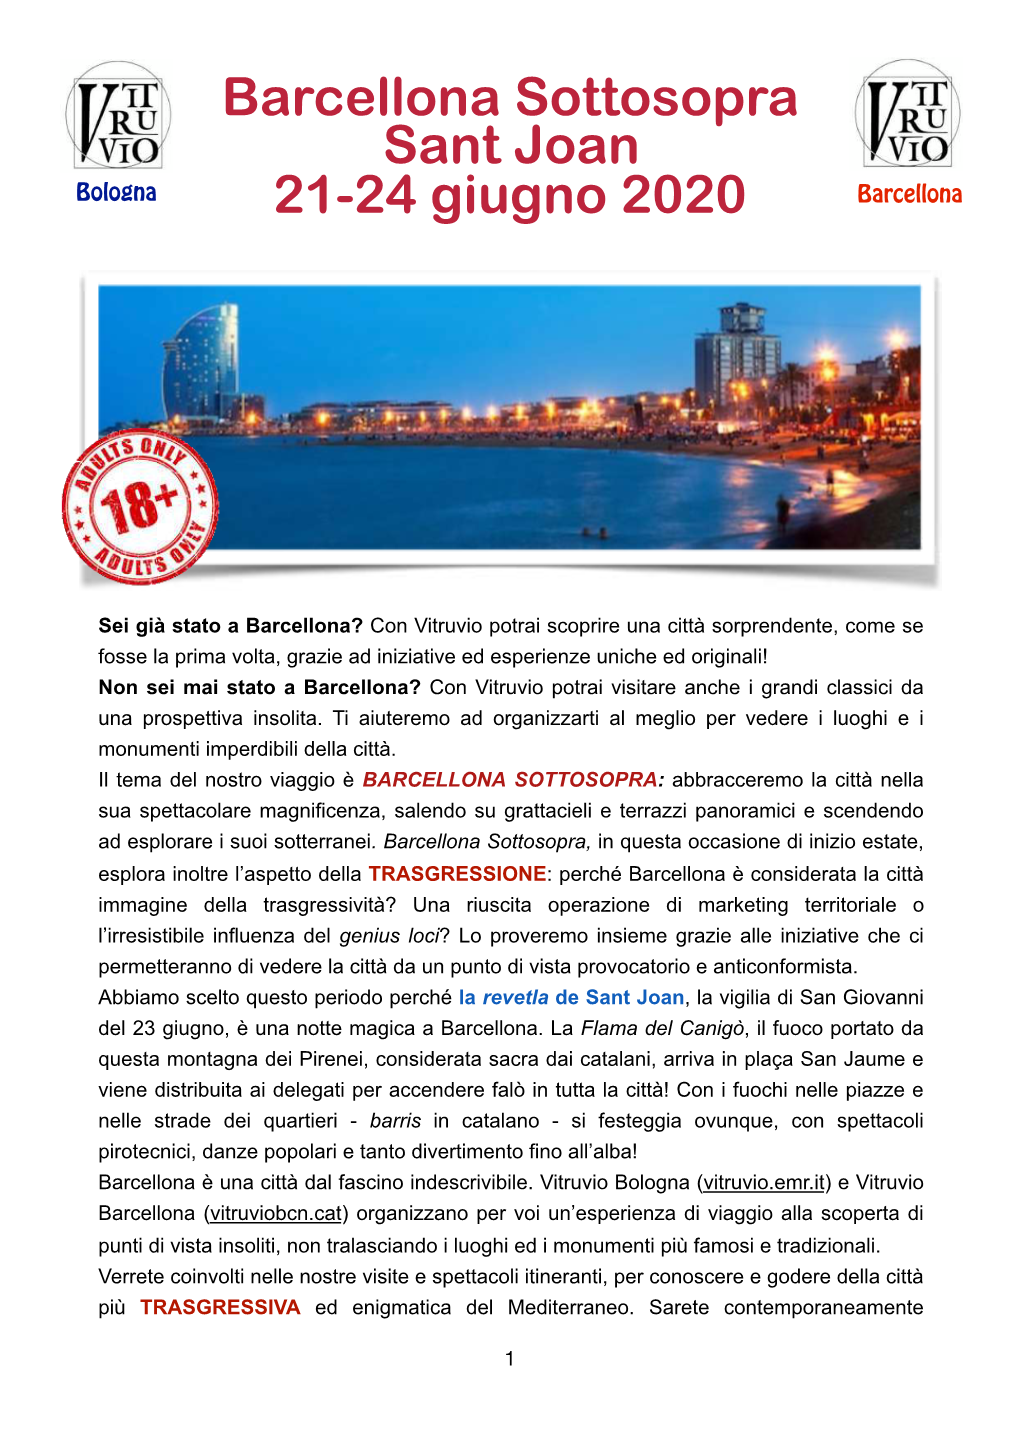 Barcellona Sottosopra Sant Joan 21-24 Giugno 2020